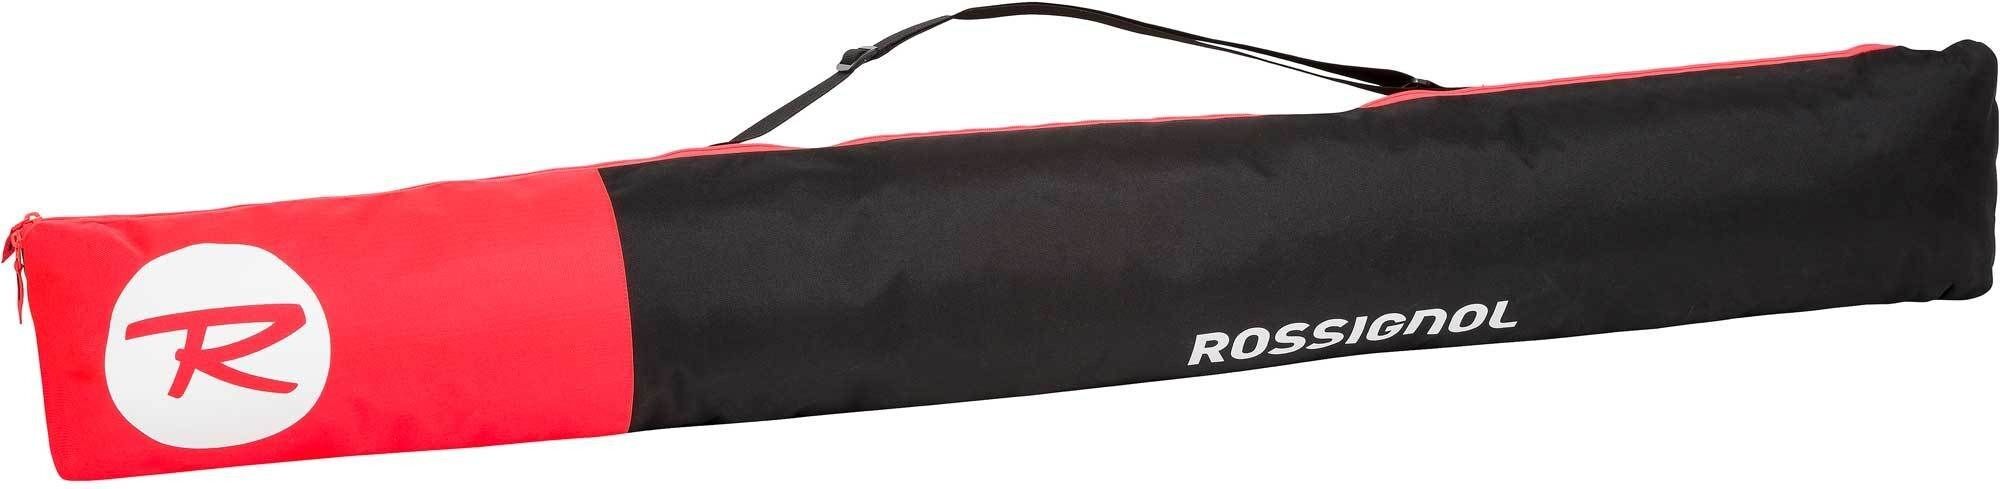 Rossignol Tactic Ski Bag extendable - Funda esquí